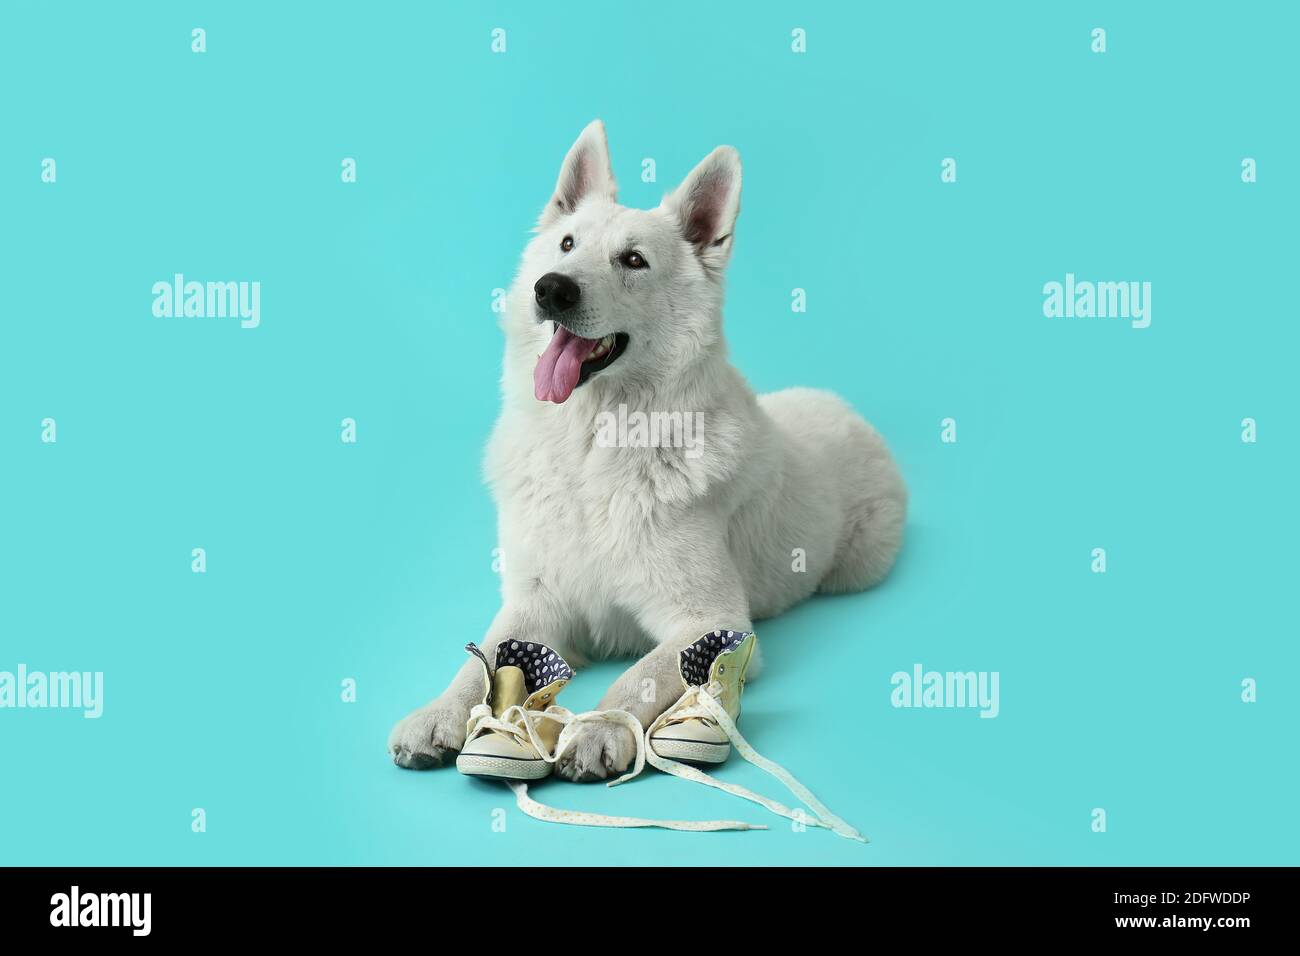 Lustige freche Hund mit Schuhen auf farbigem Hintergrund Stockfotografie -  Alamy